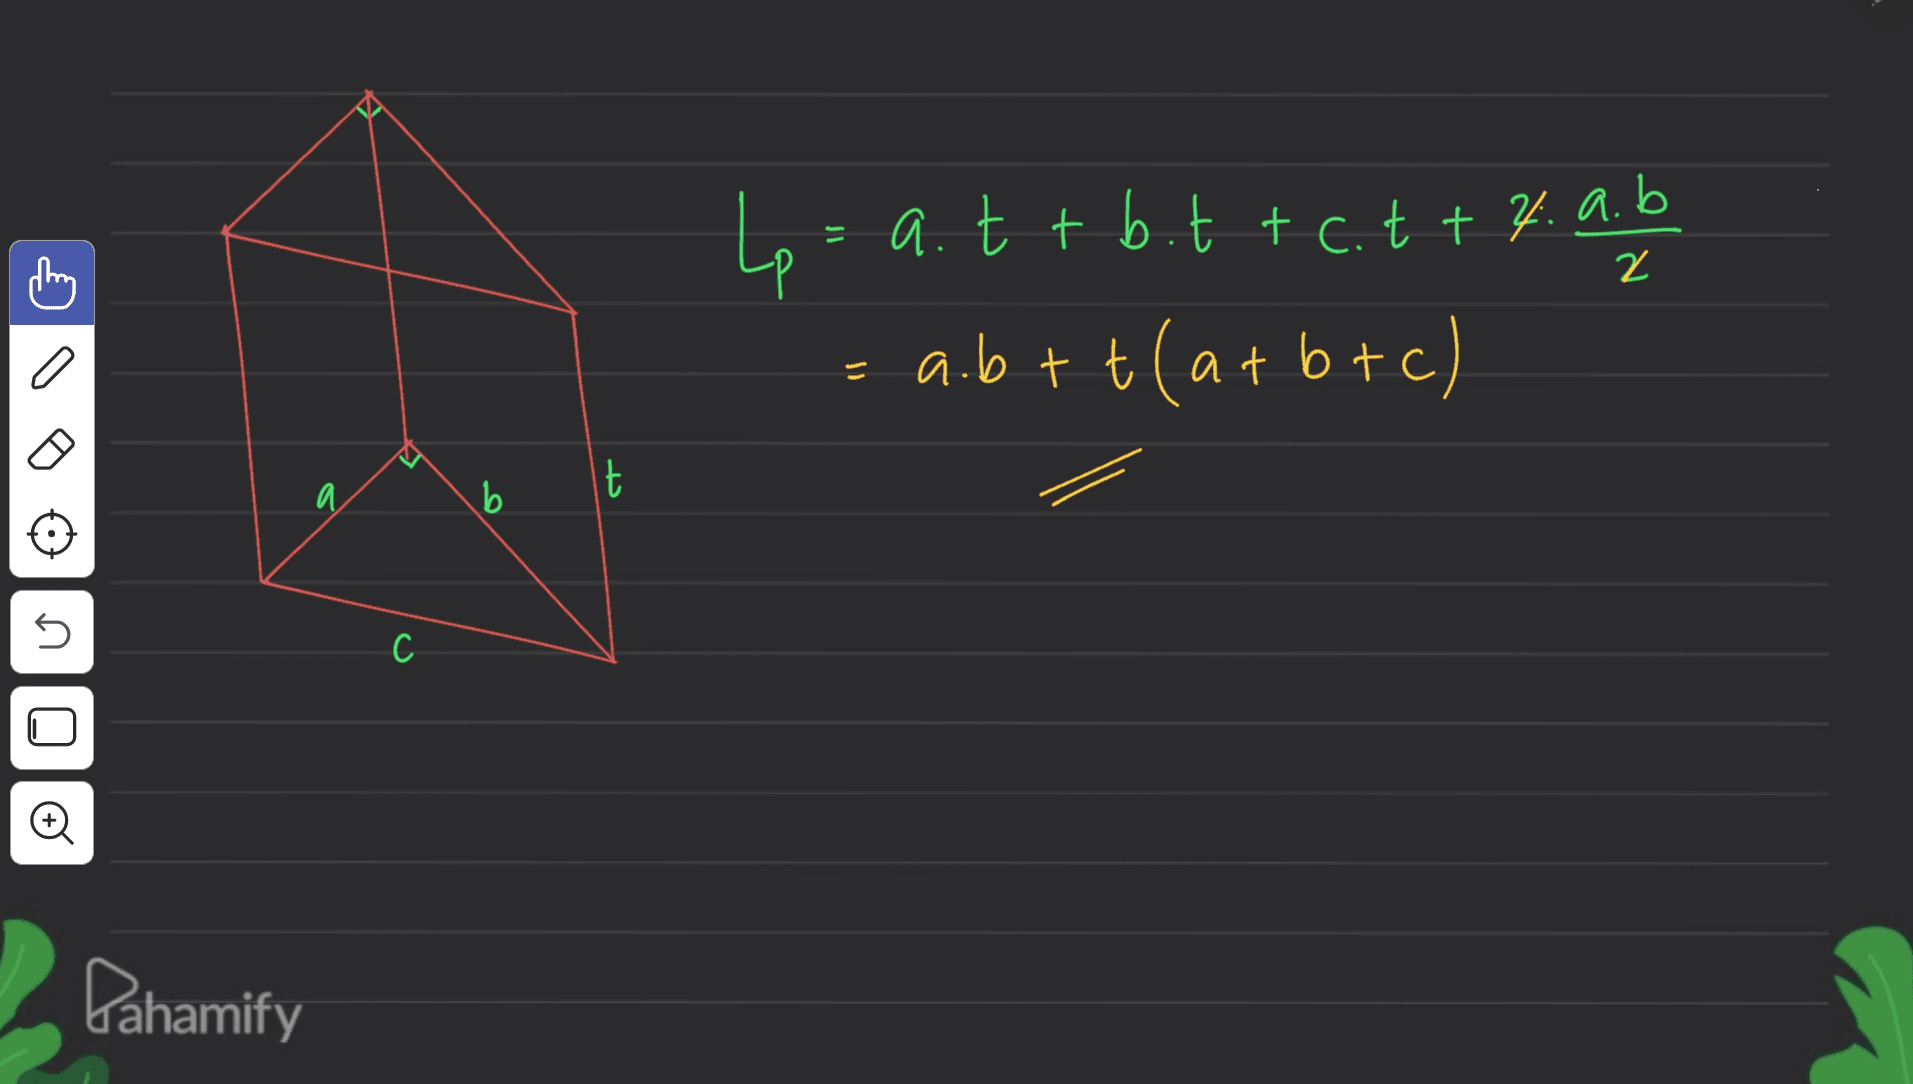 = 2 Le = a.t + bit tc. t + 4.a.b a.btt(a+b+c) کل И. b 5 с C Dahamify 